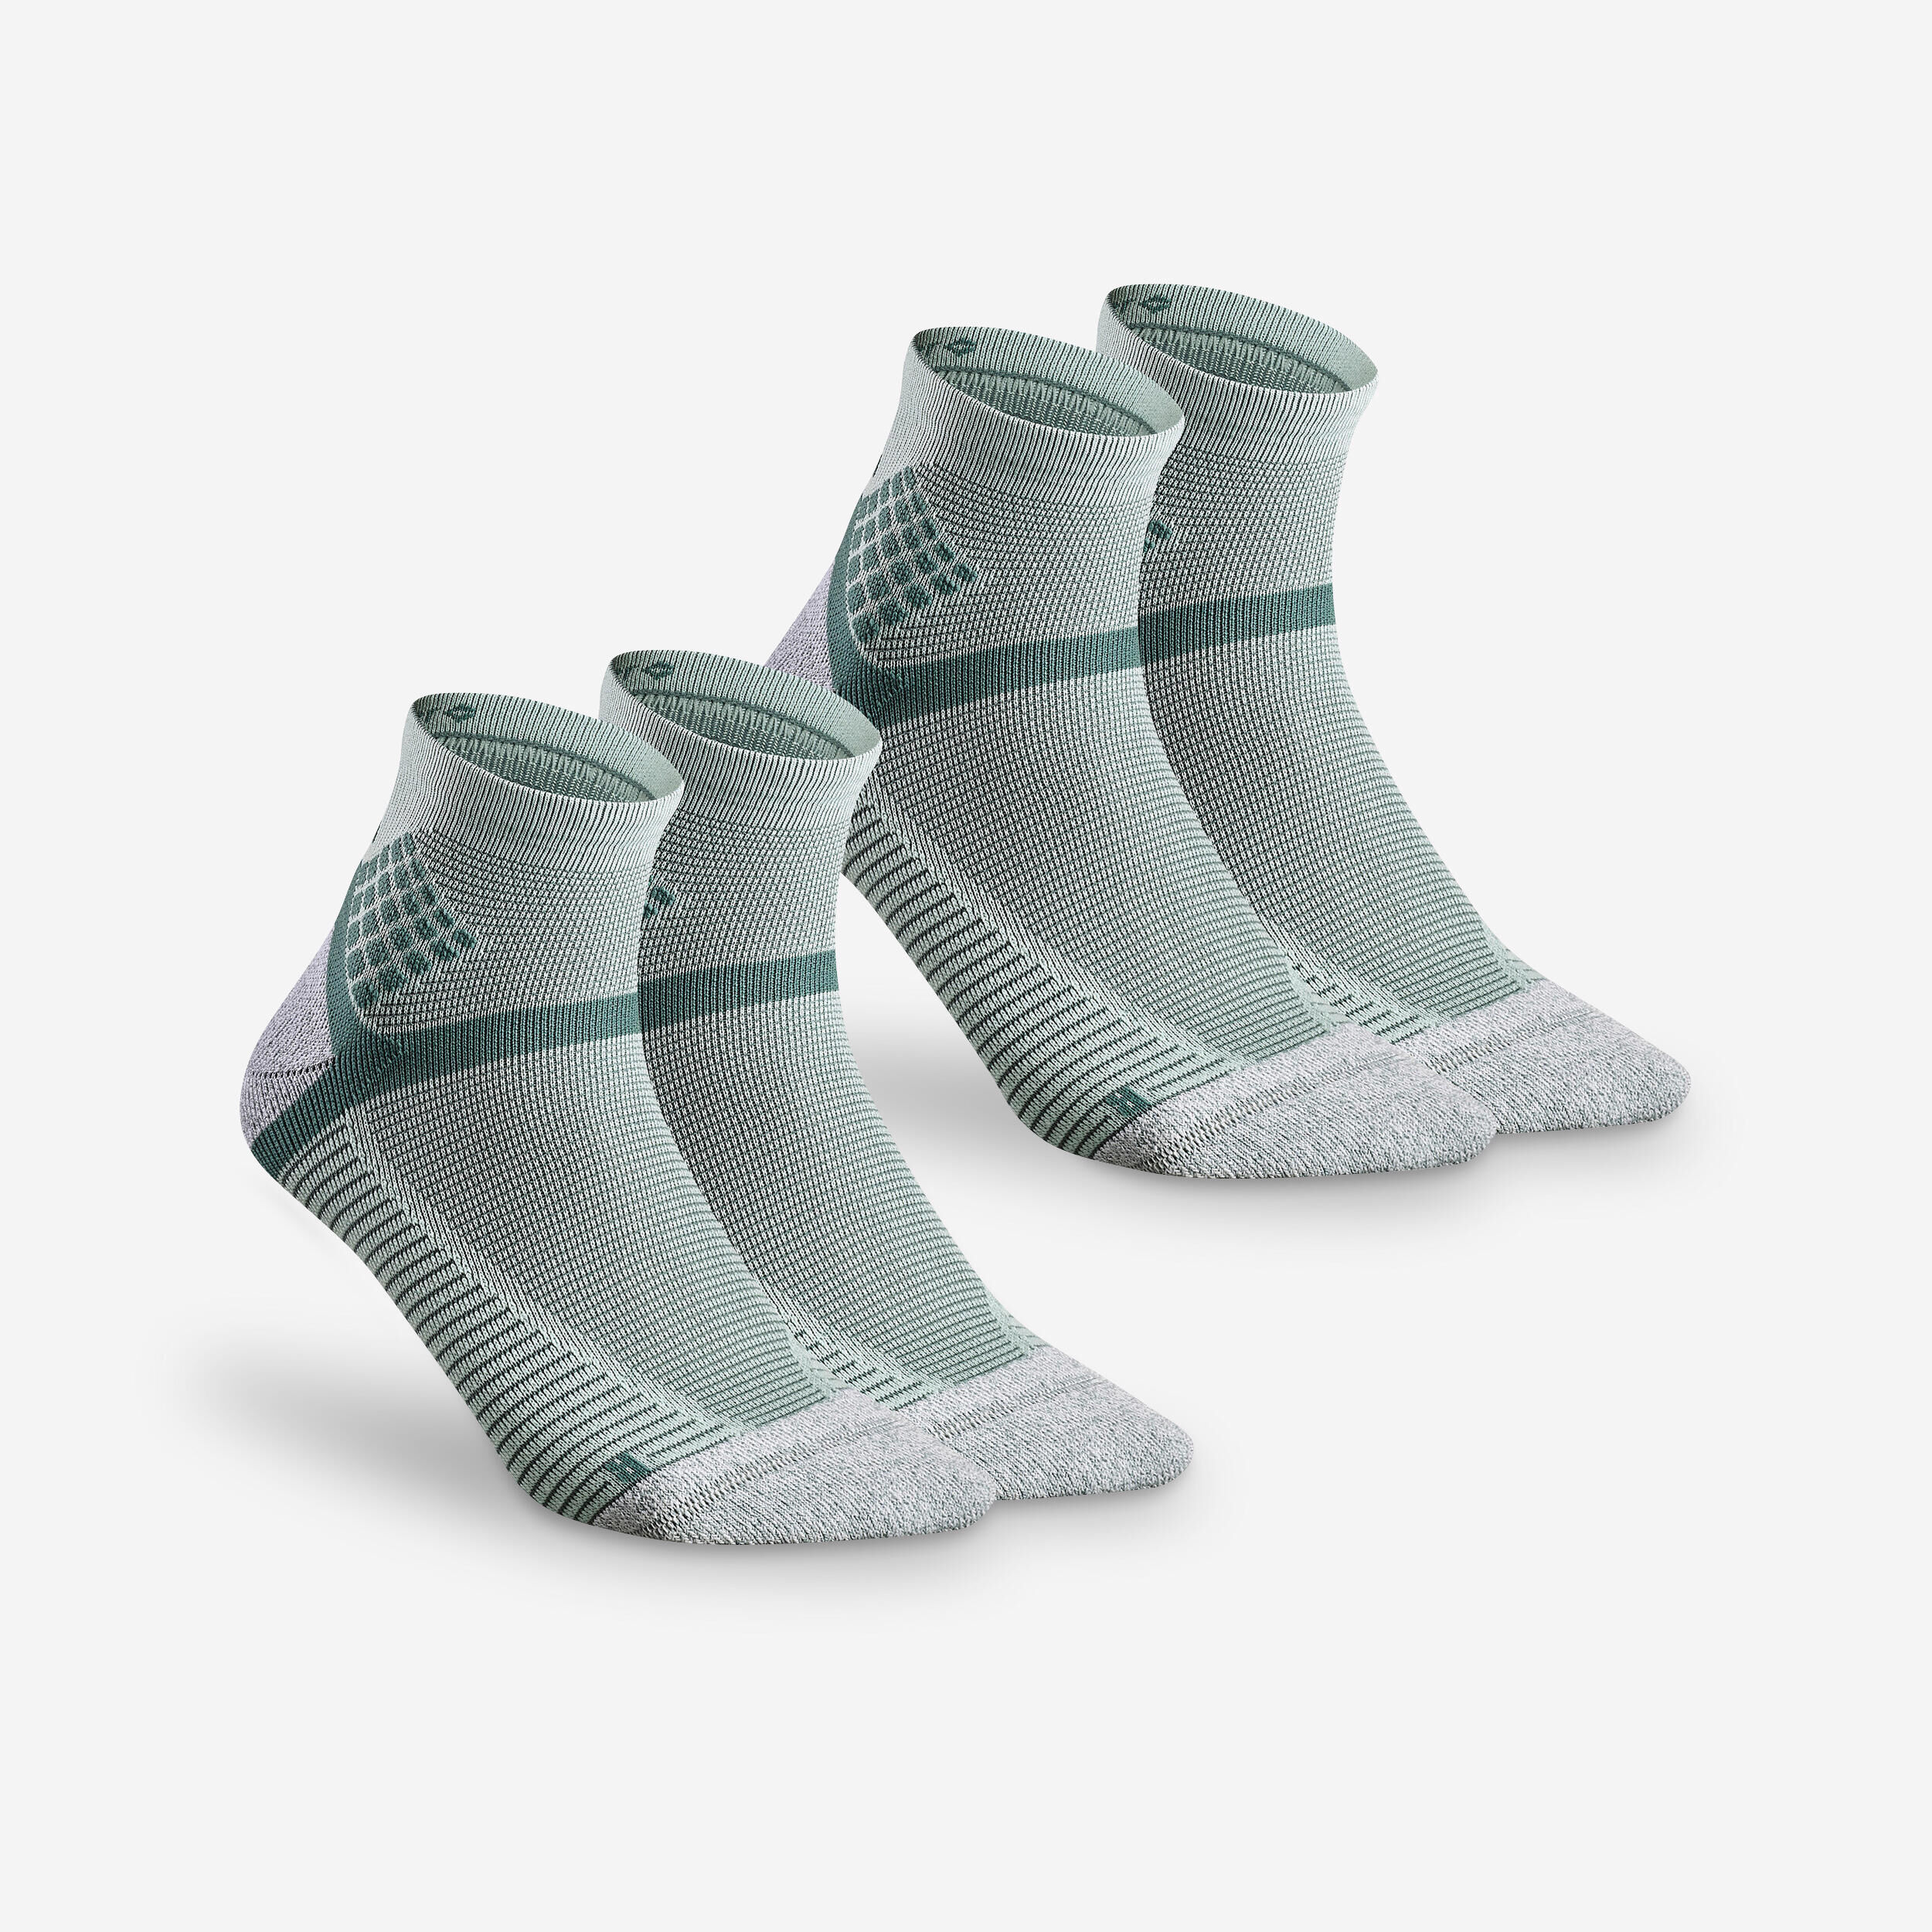 QUECHUA Hiking socks - Hike 500 Mid x2 pairs Mint Green